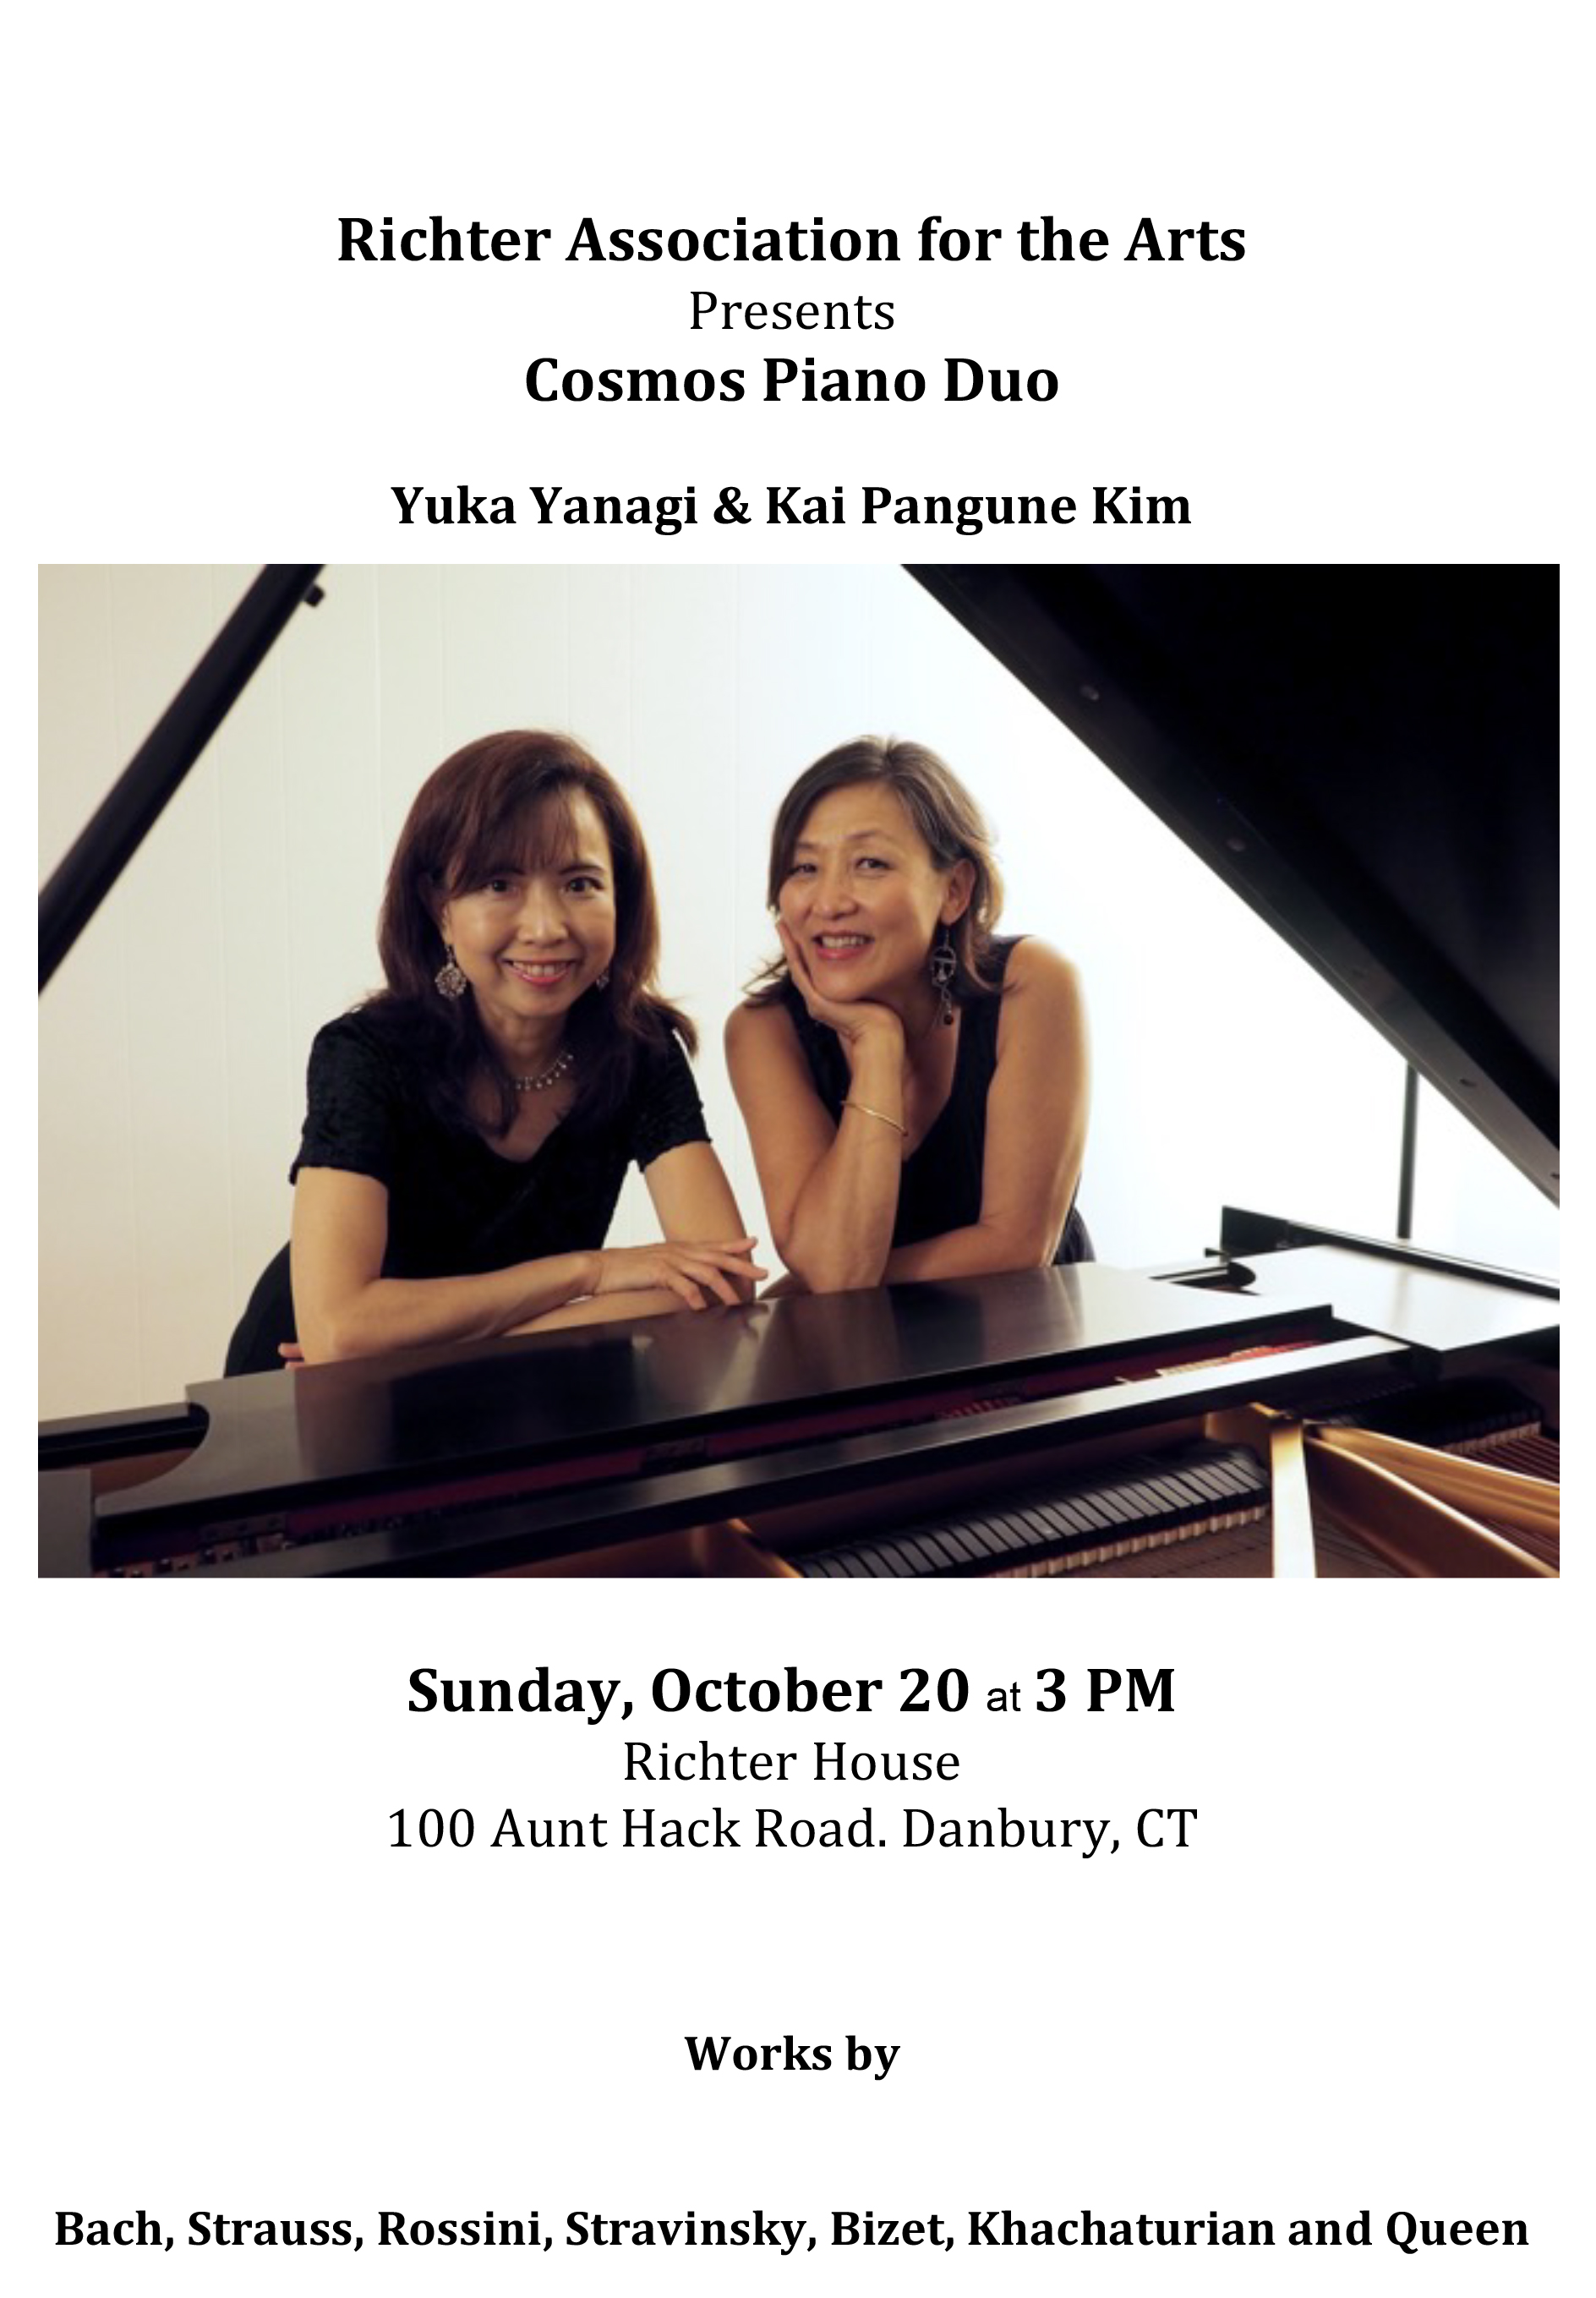 Cosmos piano duo 2019